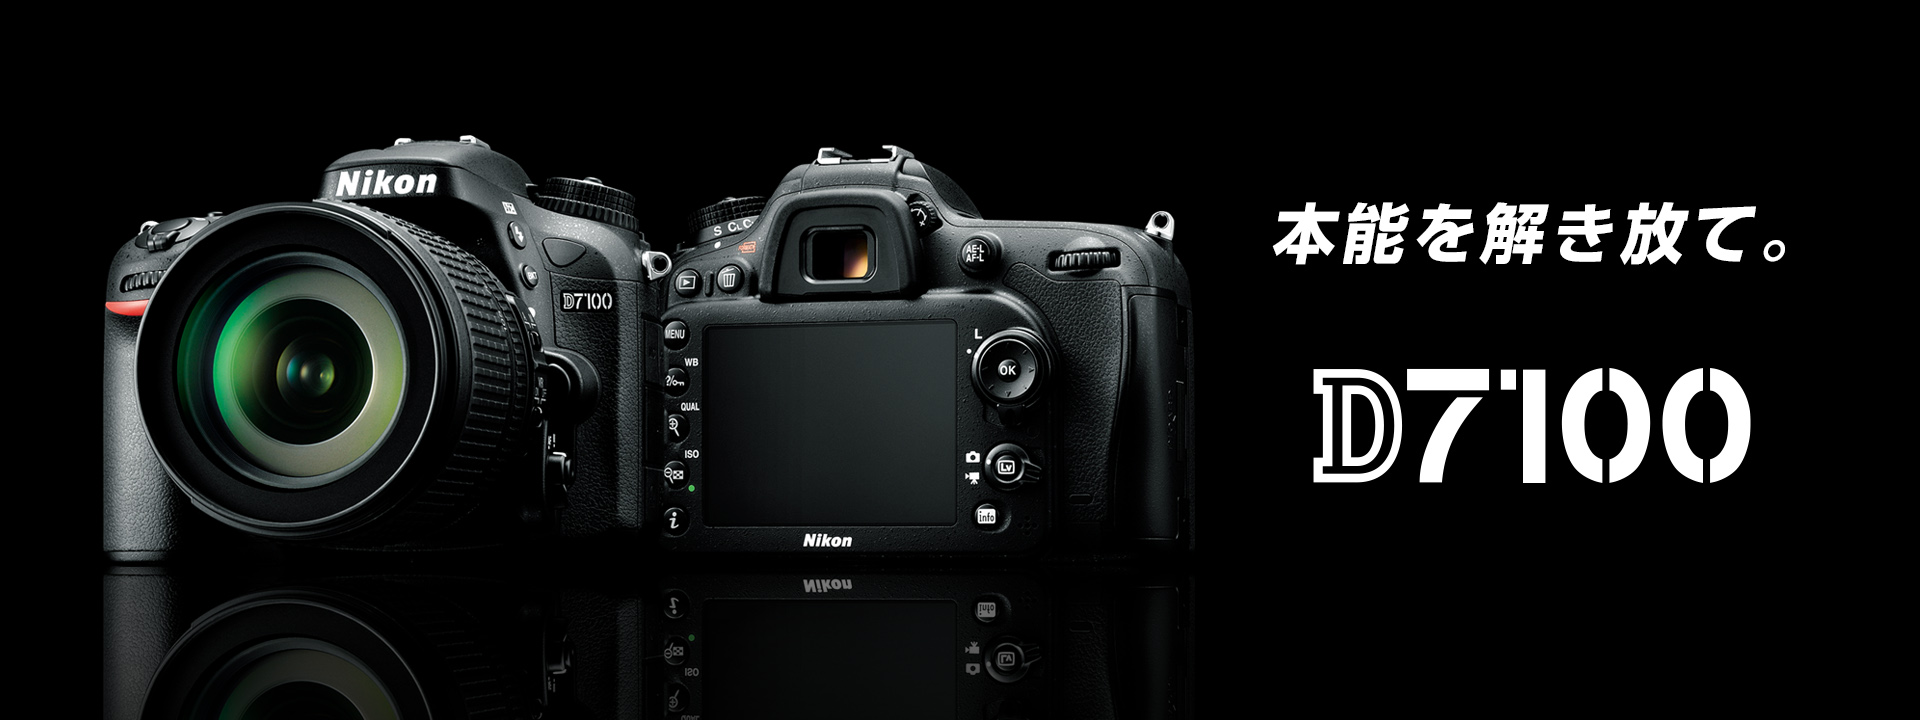 カメラ デジタルカメラ D7100 - 概要 | 一眼レフカメラ | ニコンイメージング